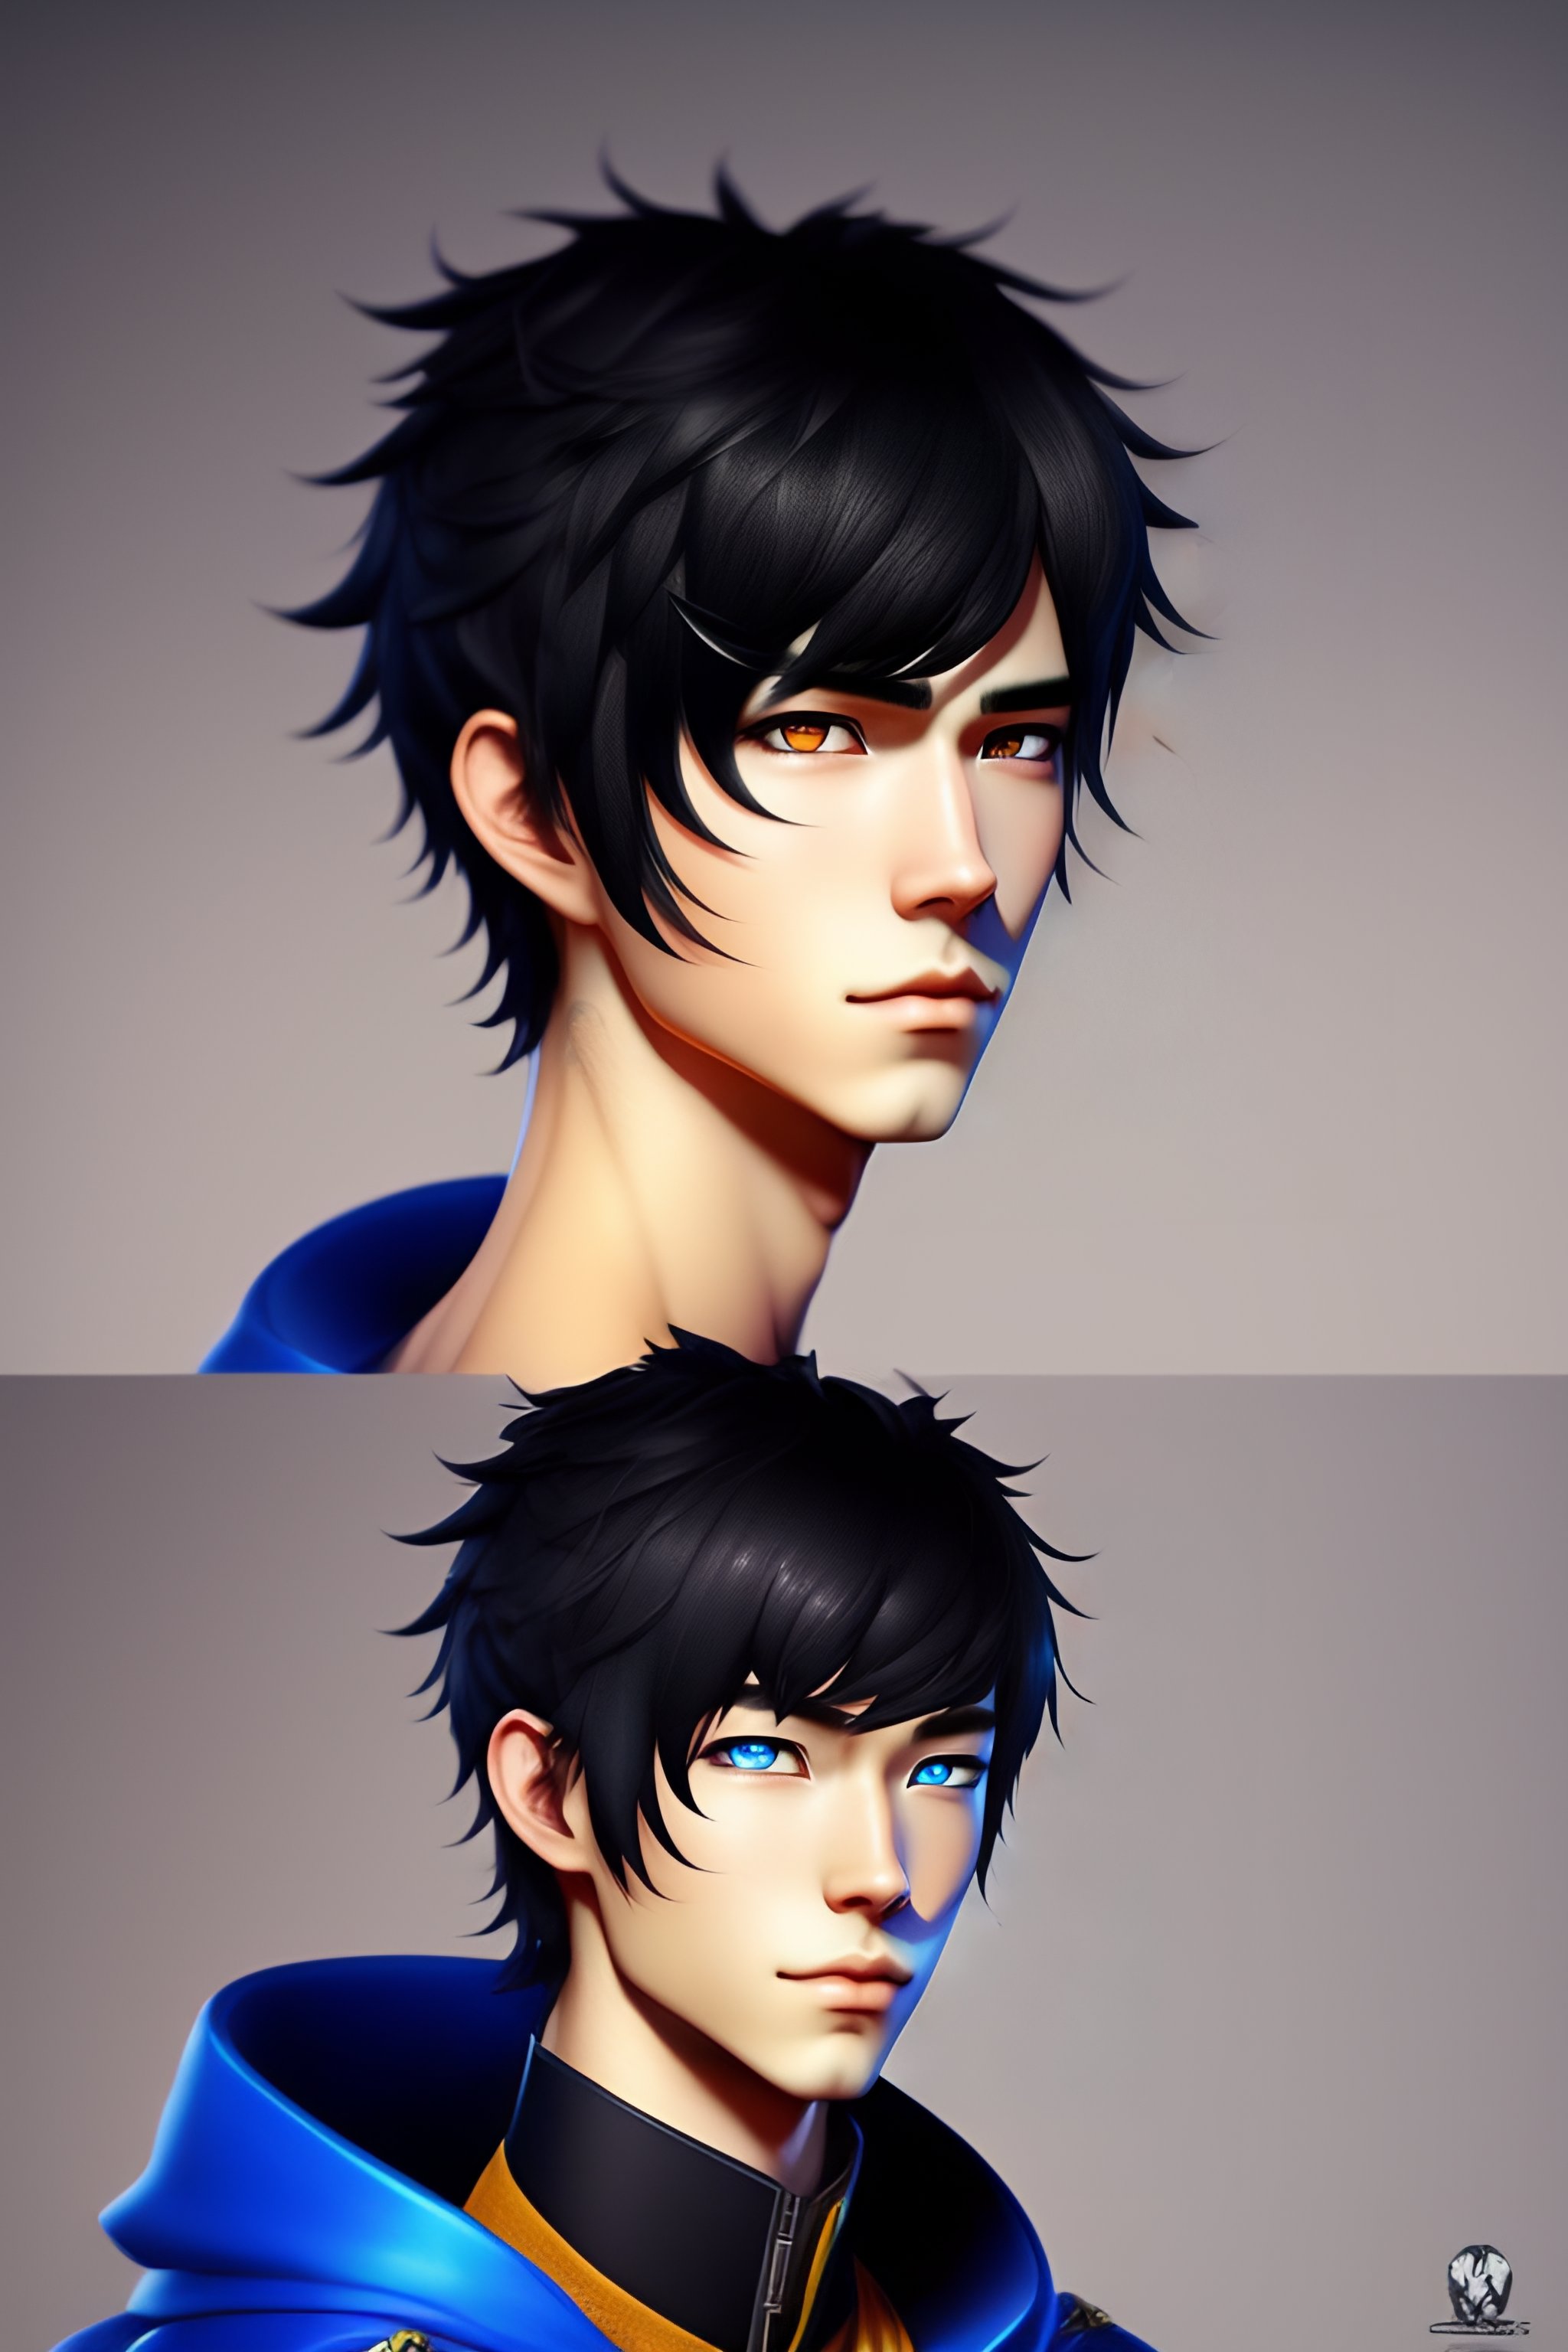 Lexica - Anime boy, black hair, blue eyes, photorealistic, highly